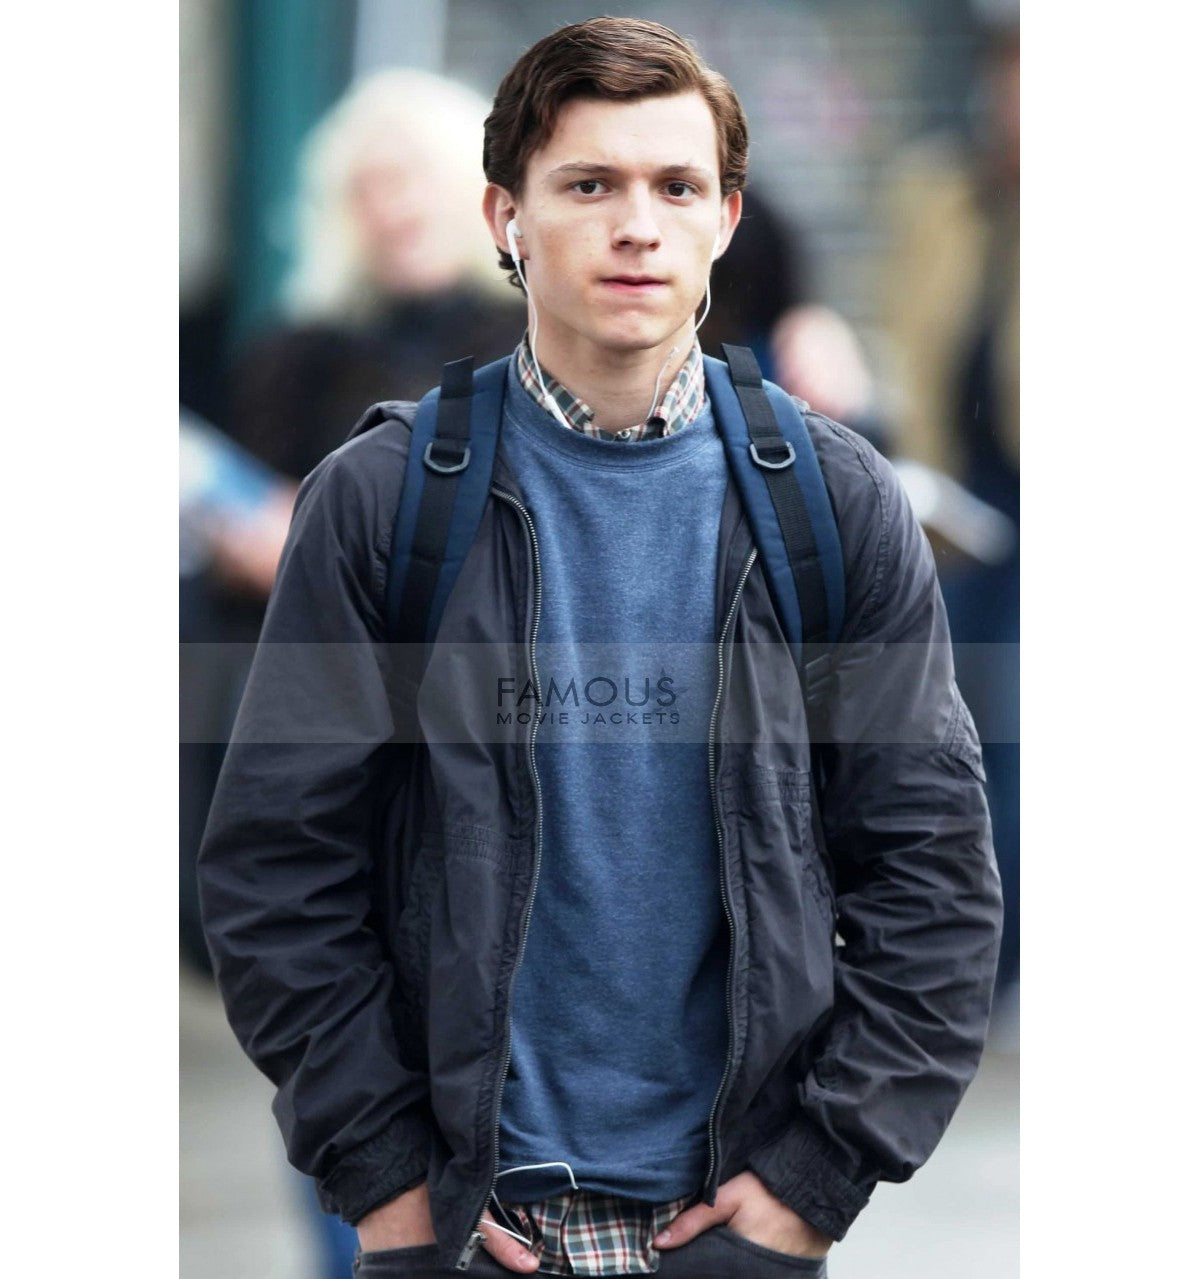 Tom Holland Spiderman jacket